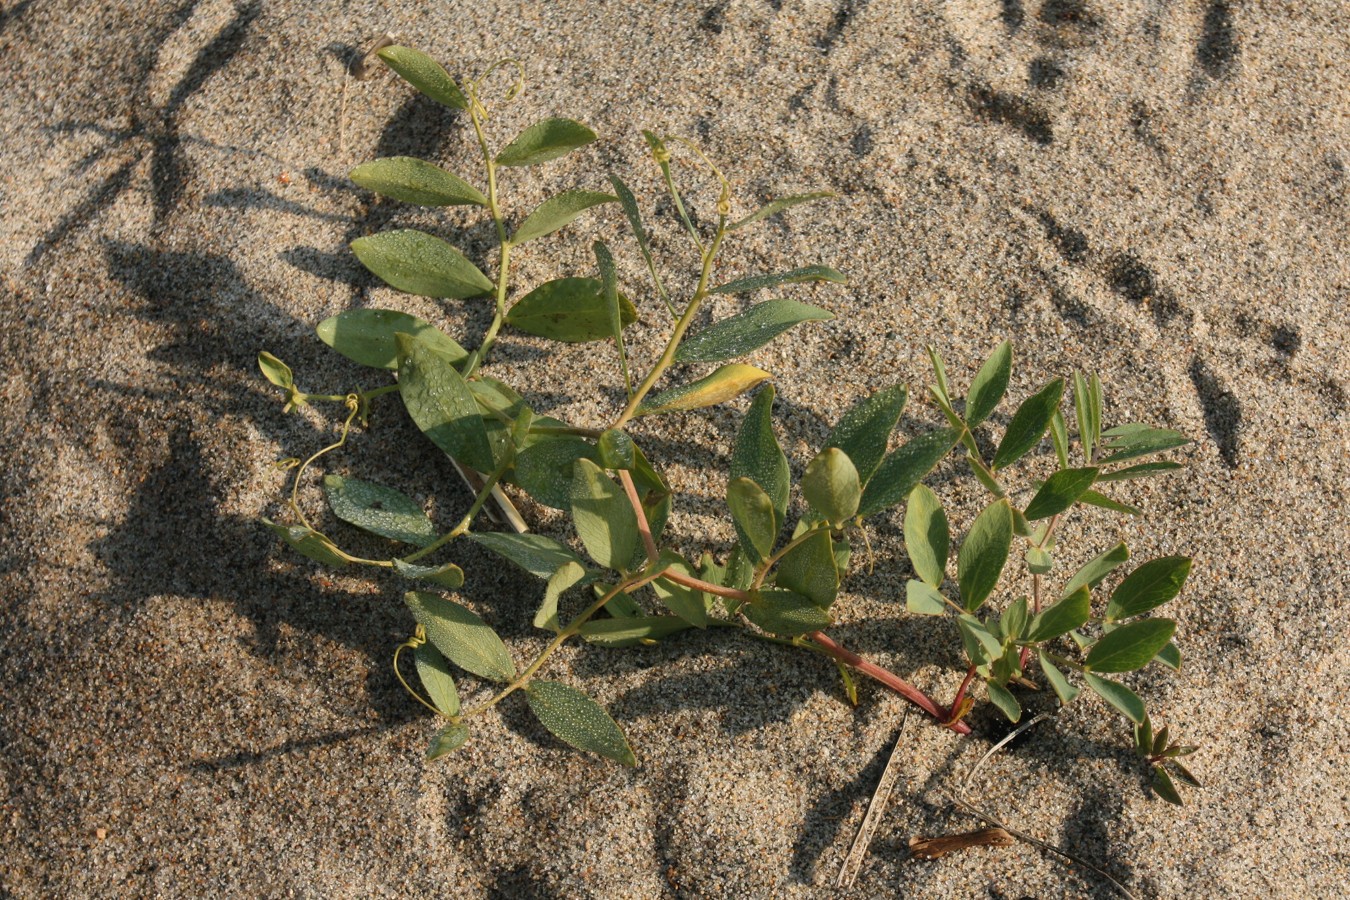 Image of Lathyrus japonicus ssp. maritimus specimen.